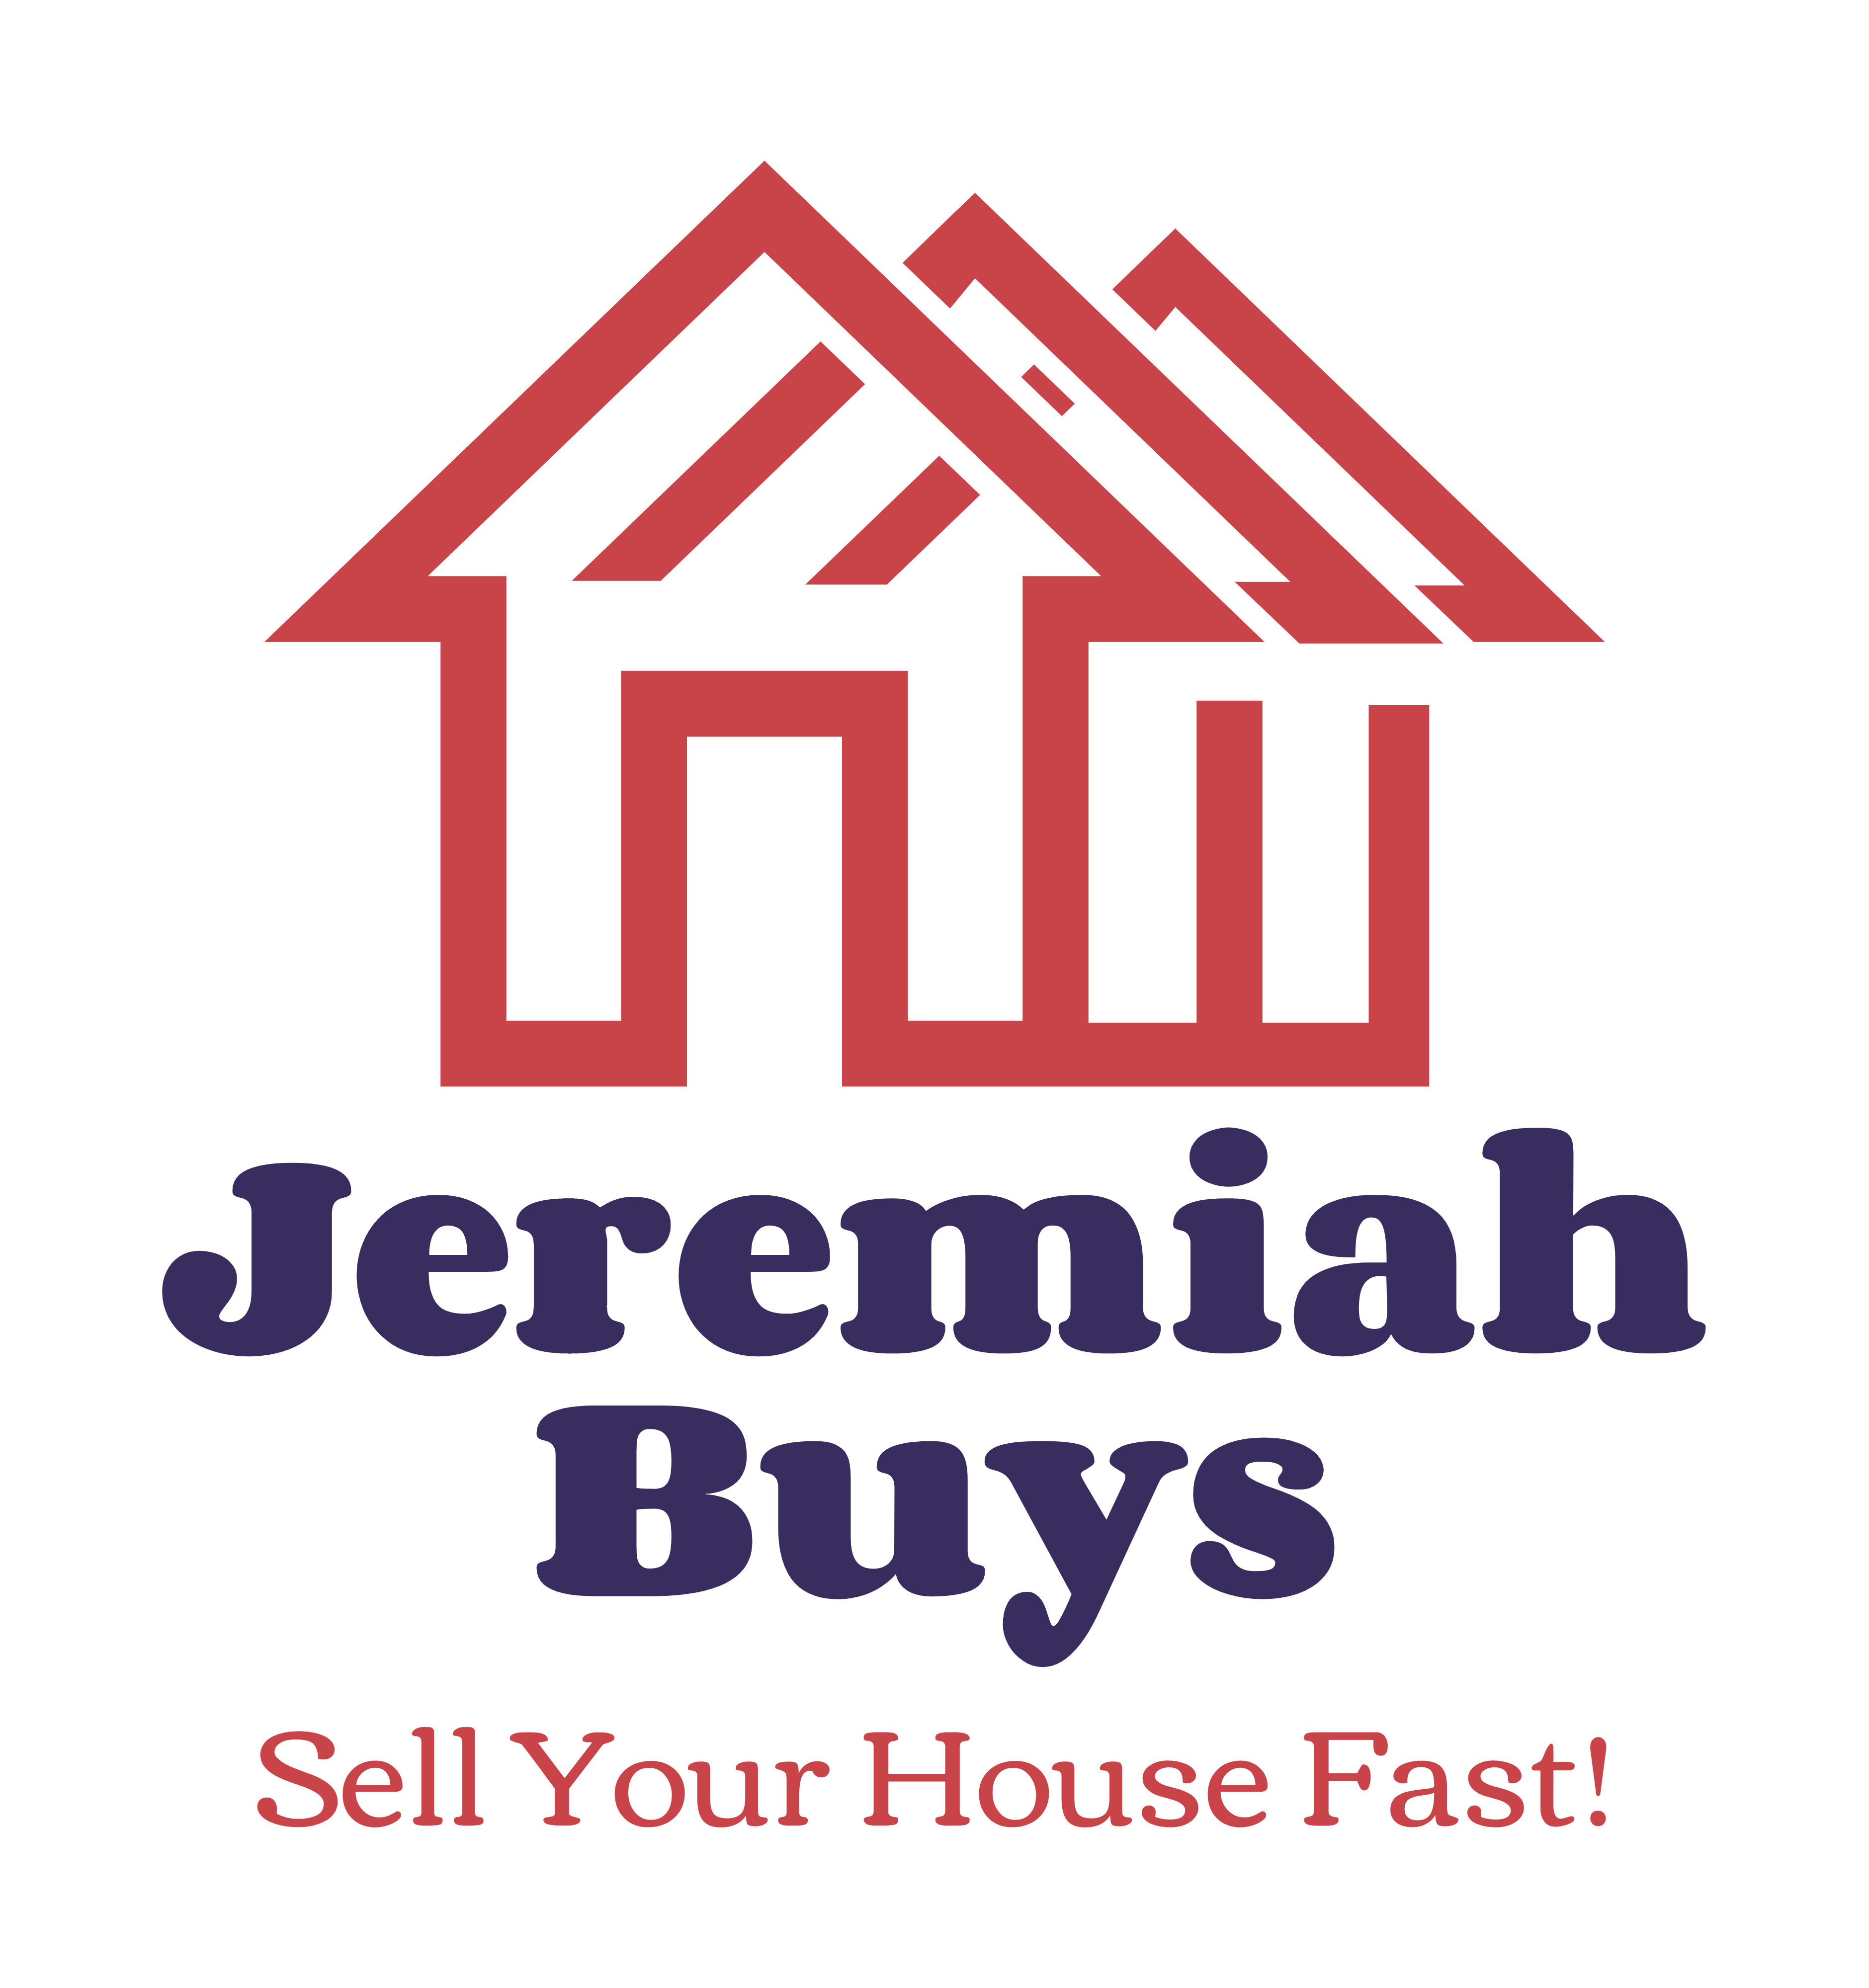 Jeremiah Buys logo